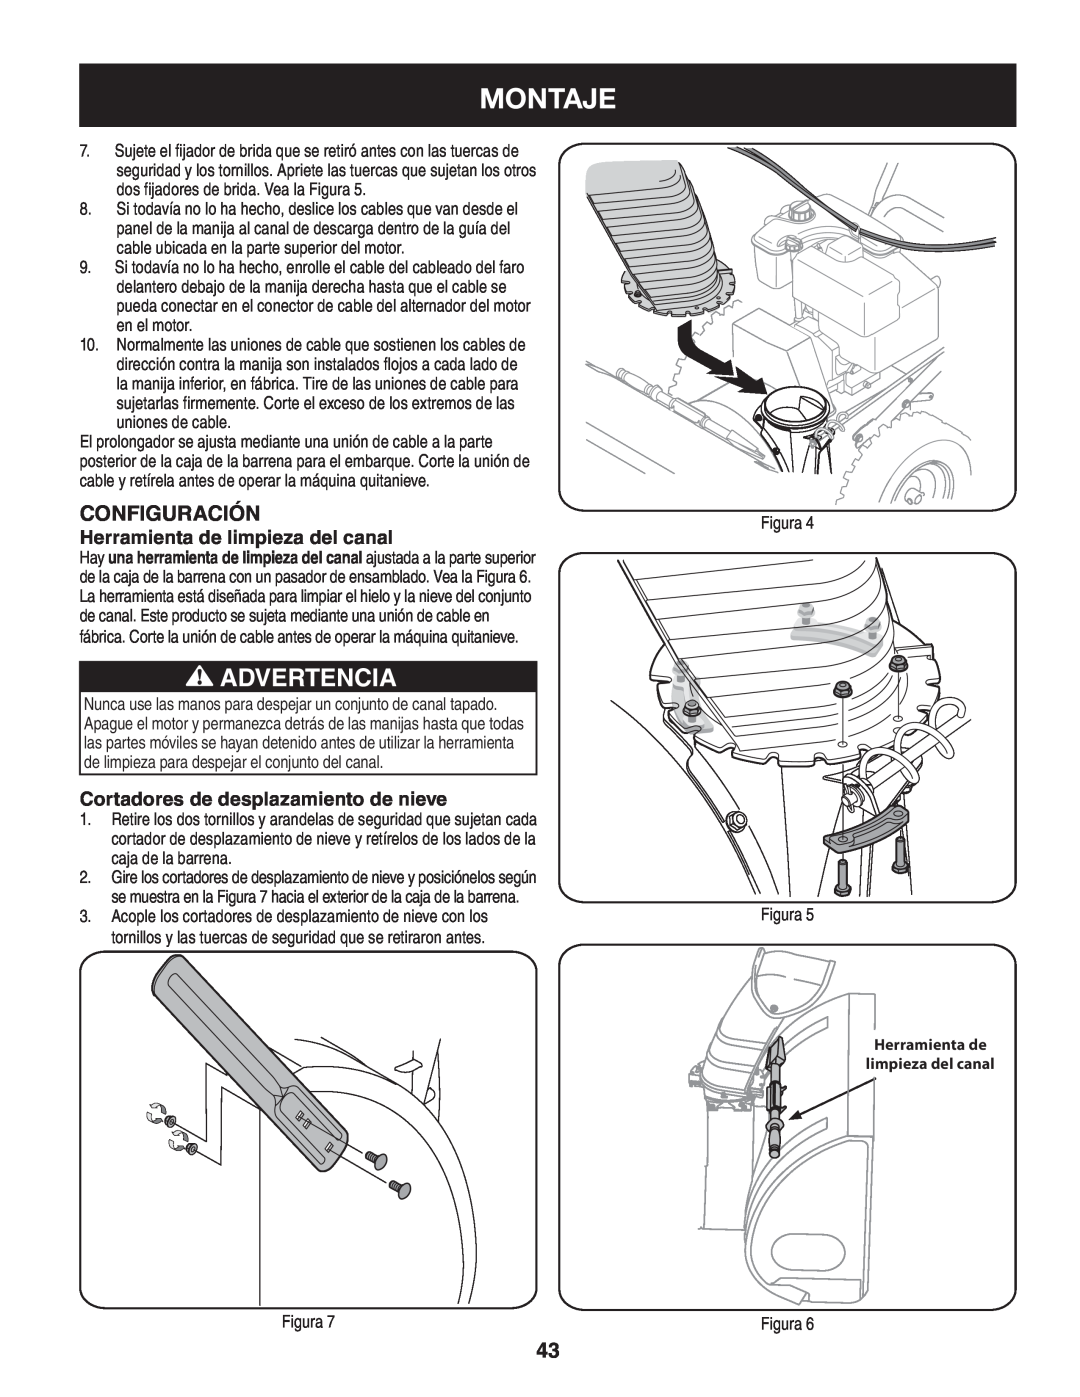 Craftsman 247.88045 manual Montaje, Advertencia, Configuración, Herramienta de limpieza del canal 